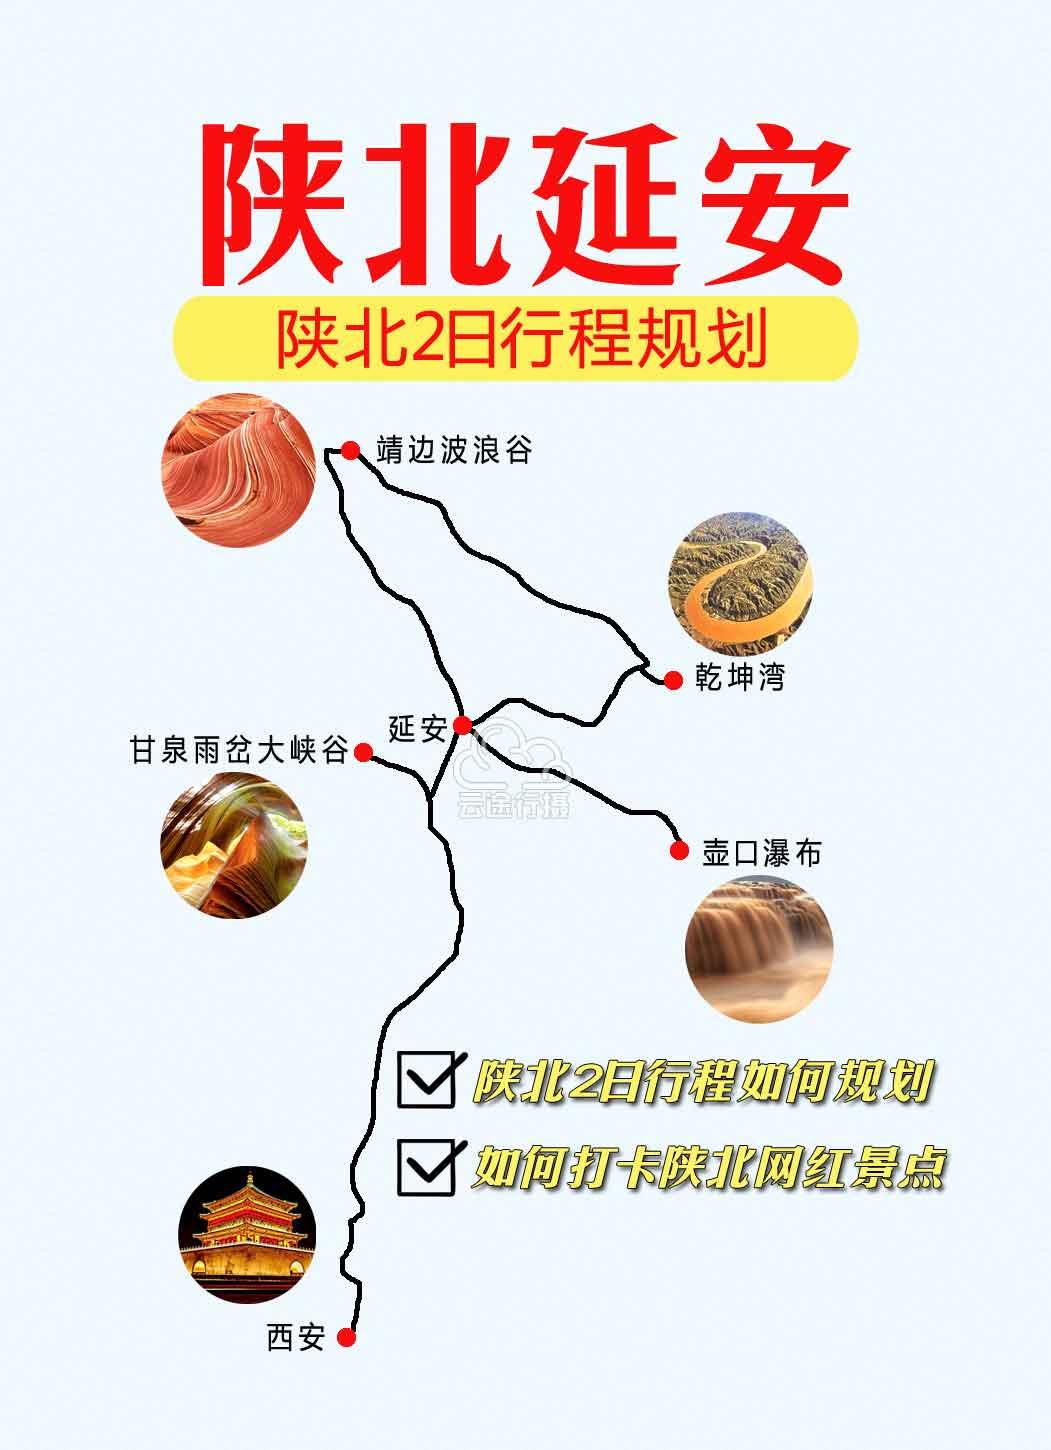 陕北2日旅游攻略线路地图(原创),甘泉雨岔大峡谷 靖边